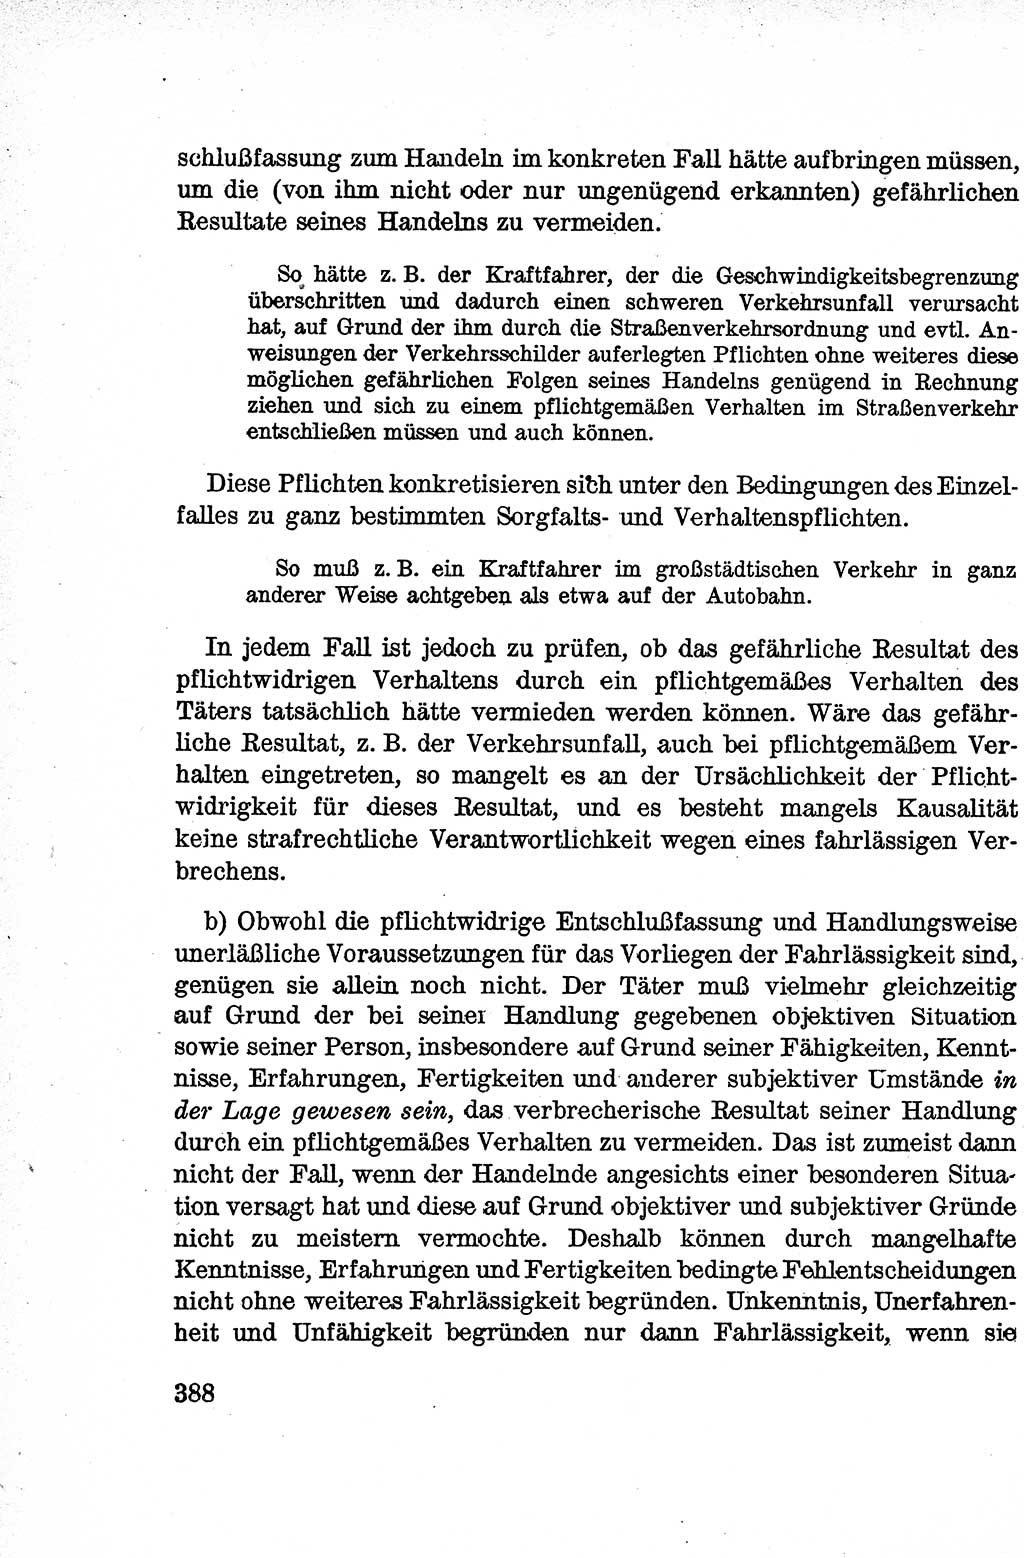 Lehrbuch des Strafrechts der Deutschen Demokratischen Republik (DDR), Allgemeiner Teil 1959, Seite 388 (Lb. Strafr. DDR AT 1959, S. 388)